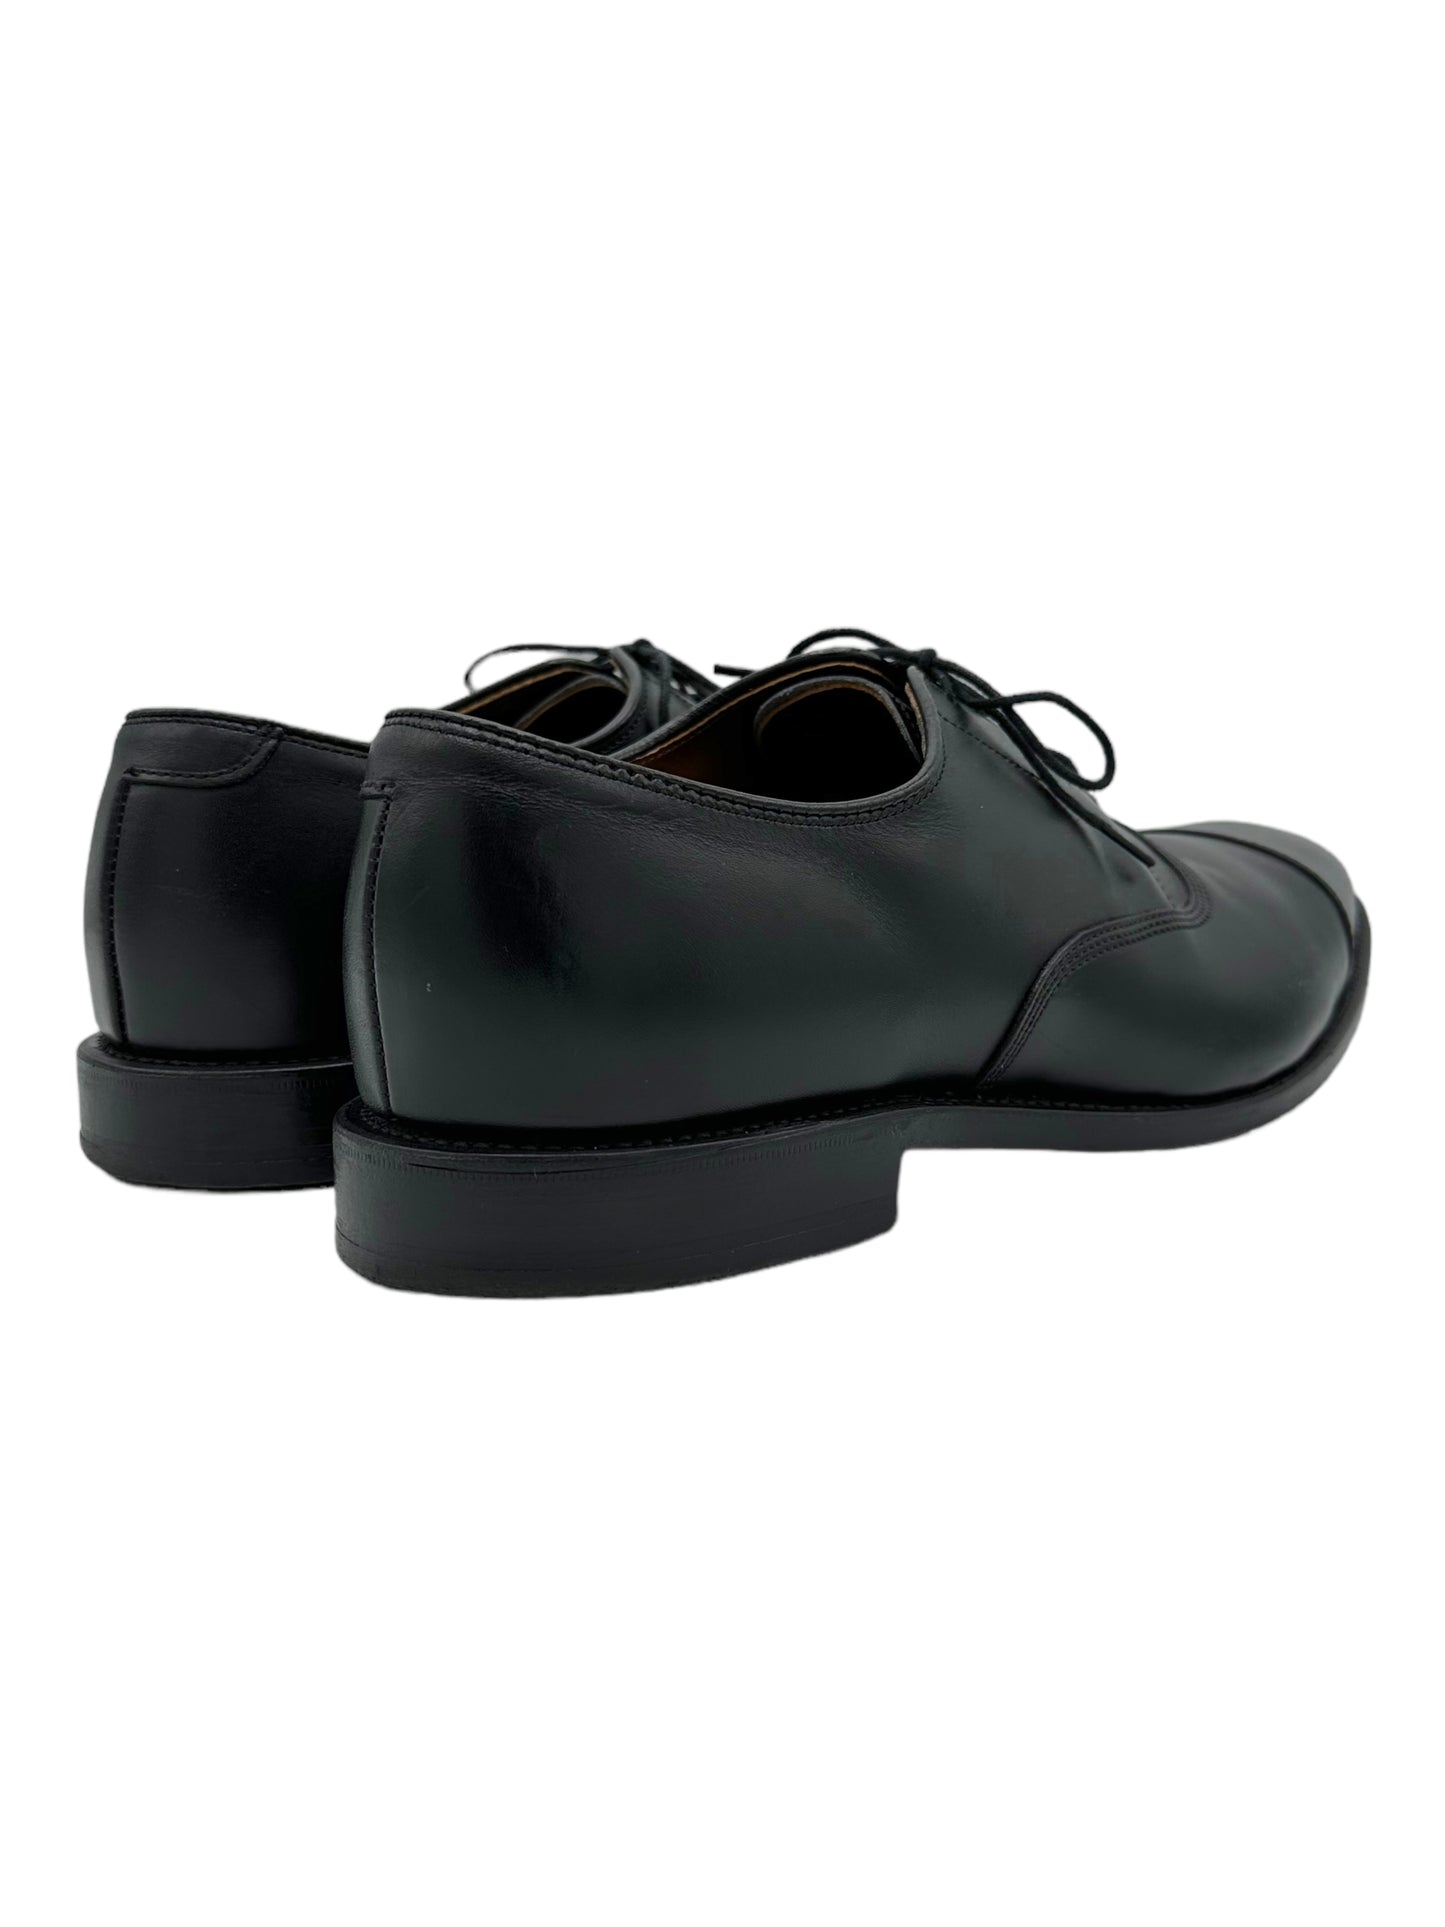 Allen Edmonds Black Leather Park Avenue Cap Toe Oxford Dress Shoes 11